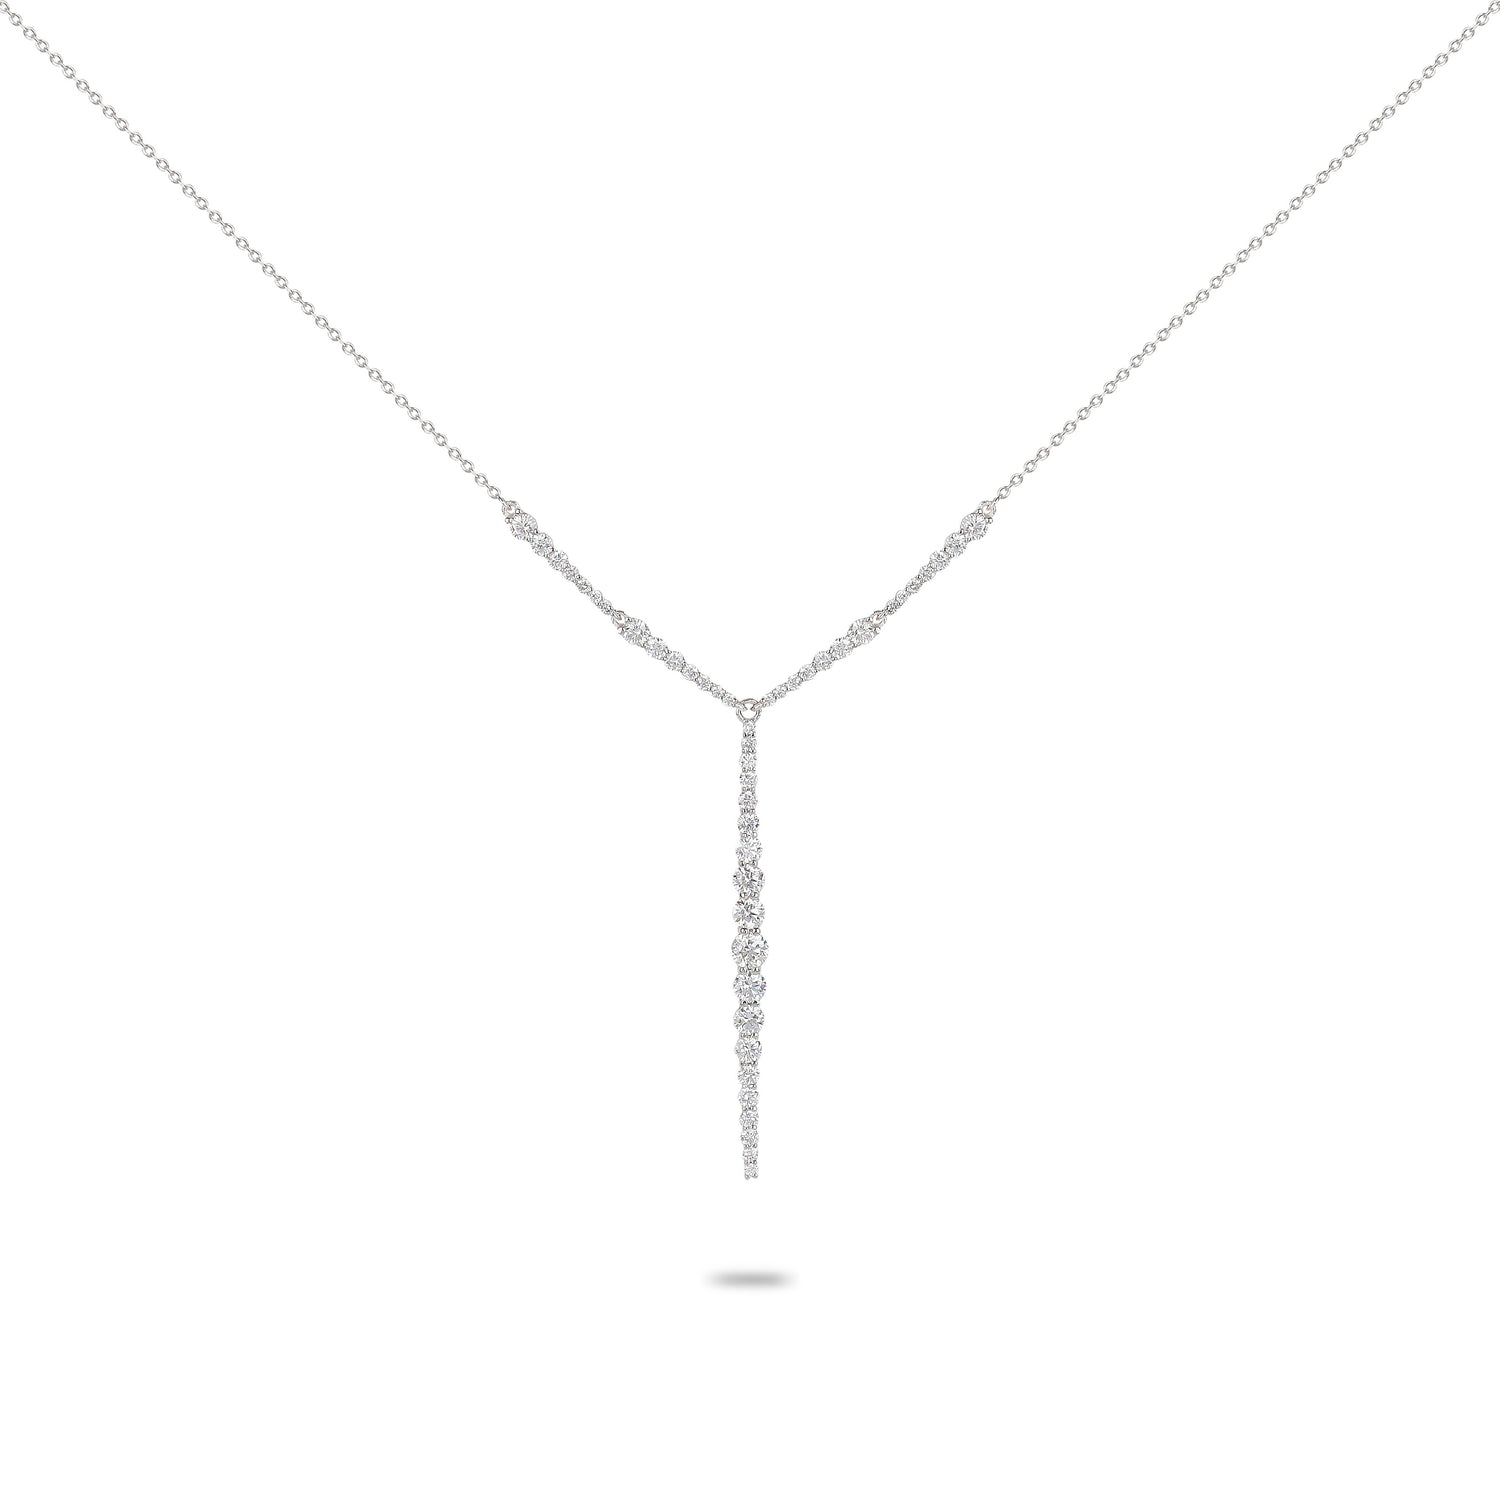 Diamond Line Necklace | Diamond Necklace | Diamond Necklace Design